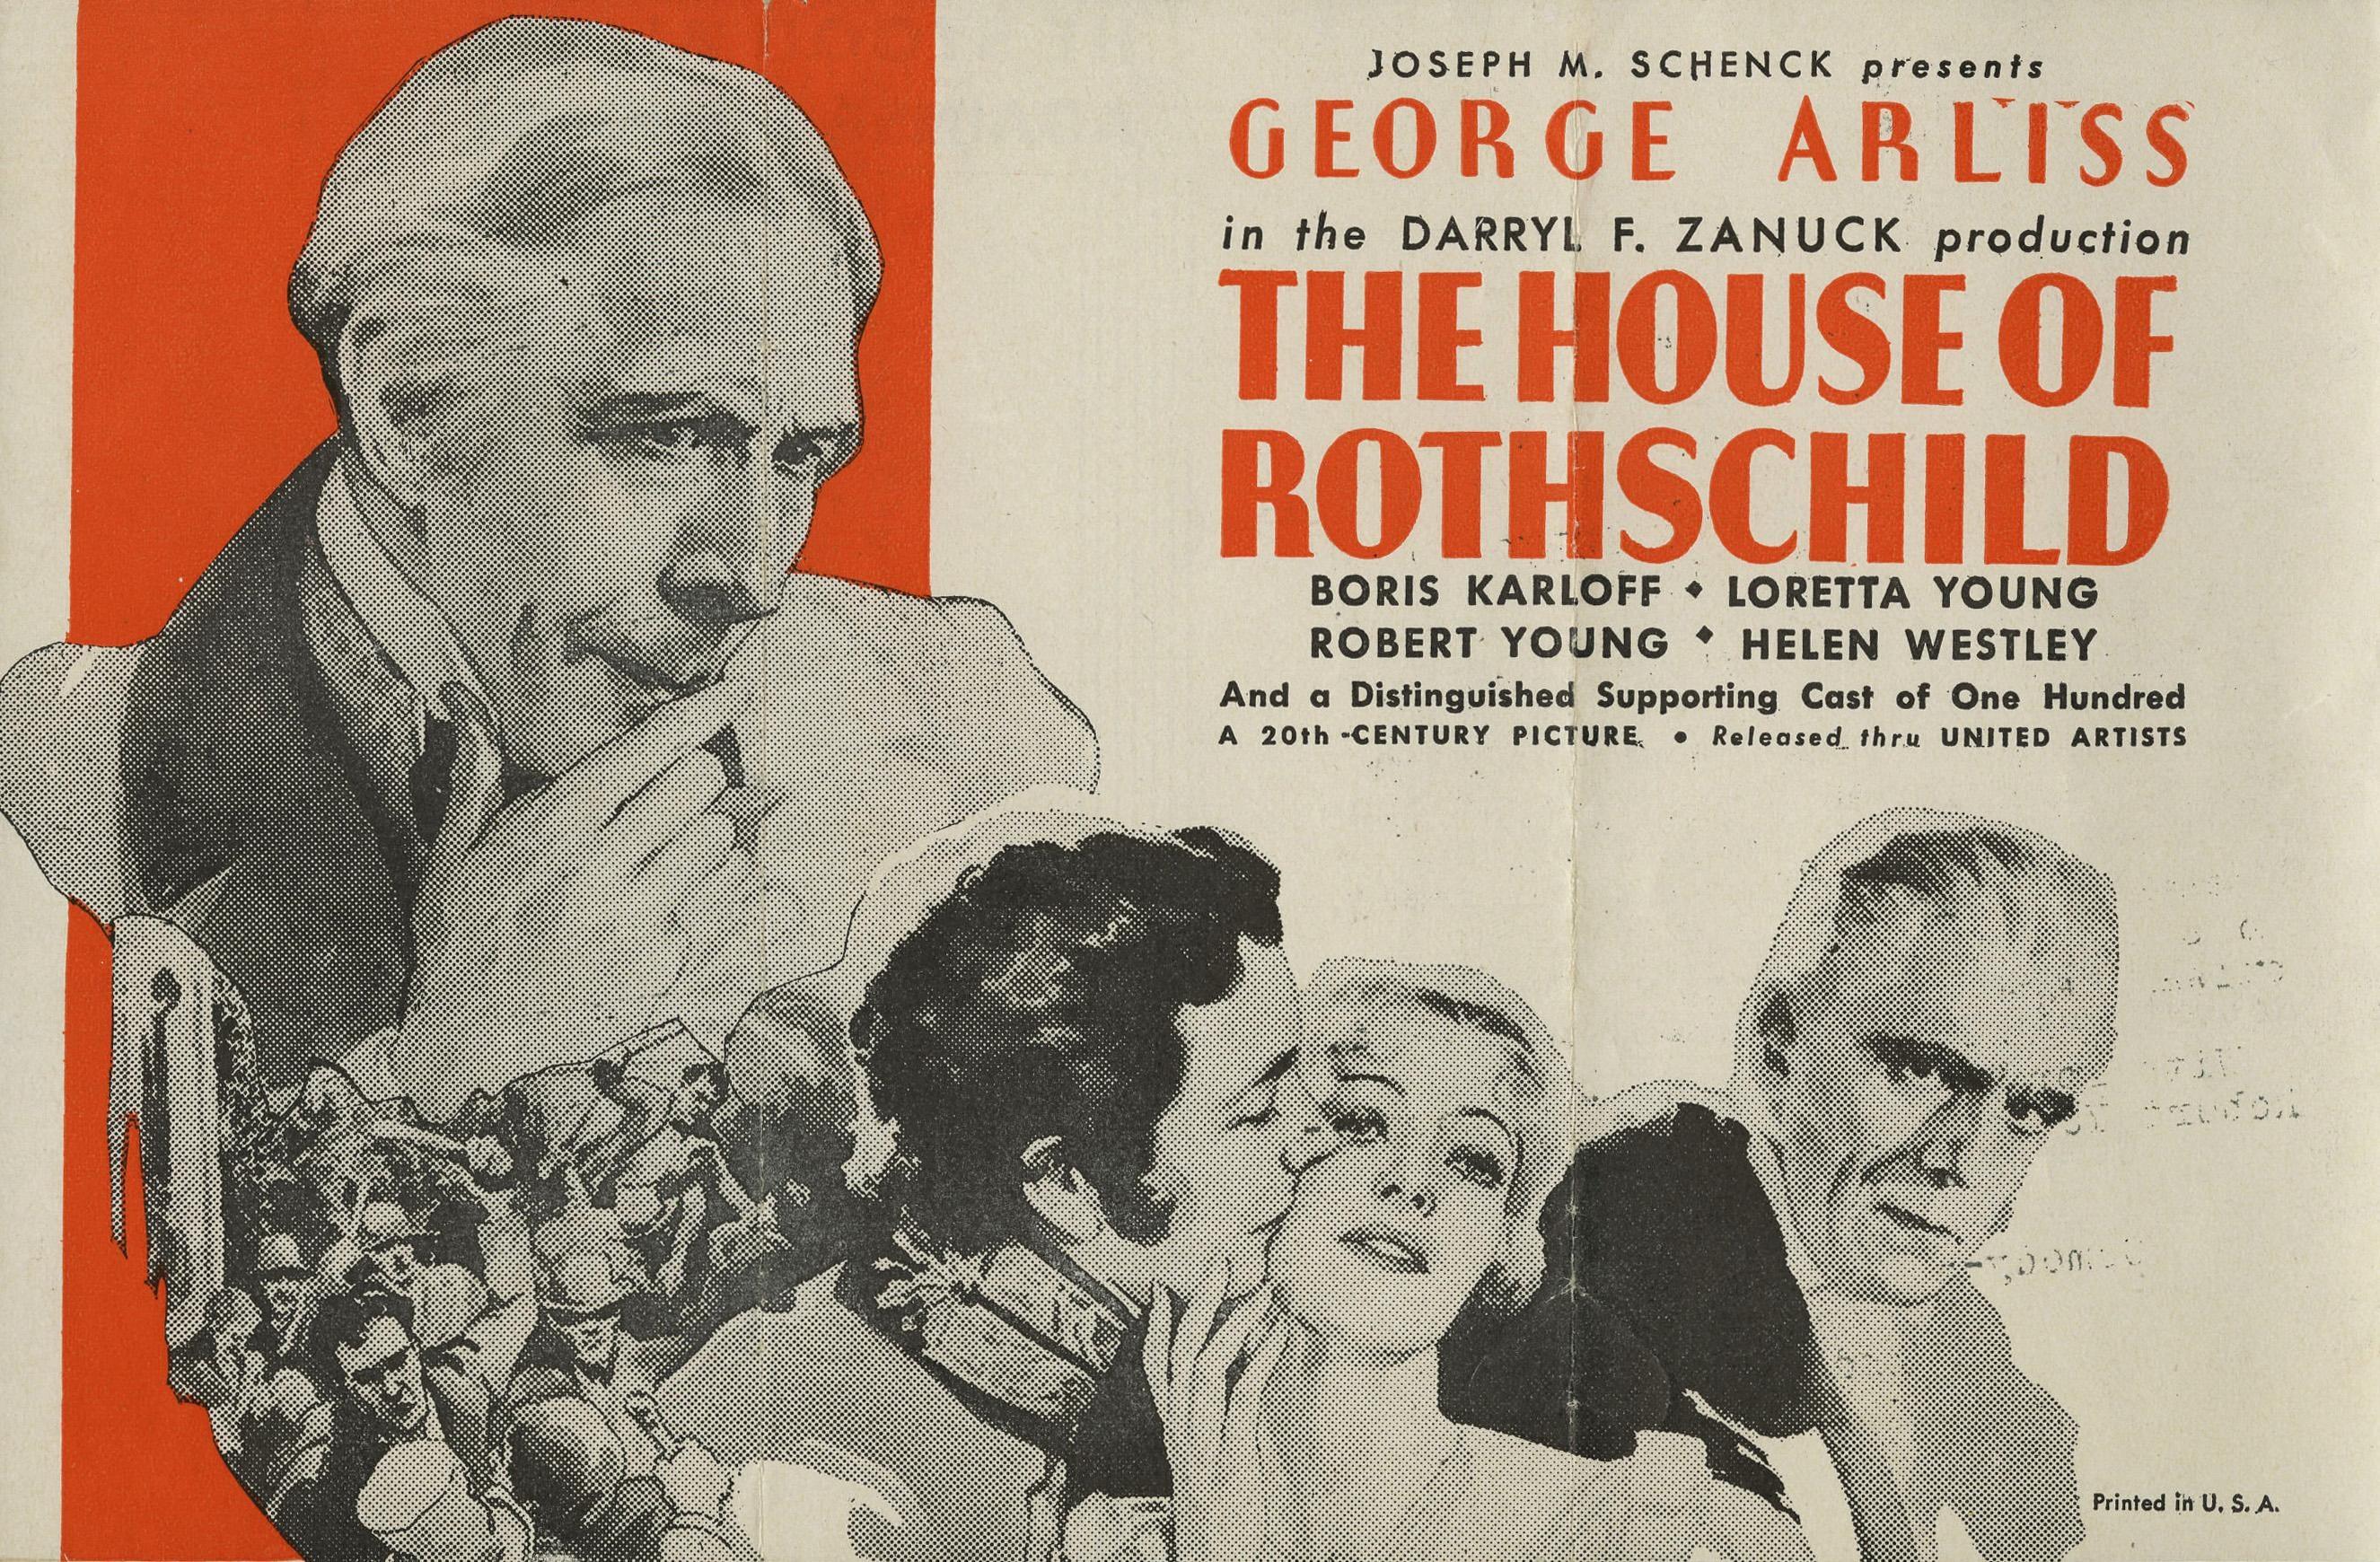 Rothschild Movie Theatre